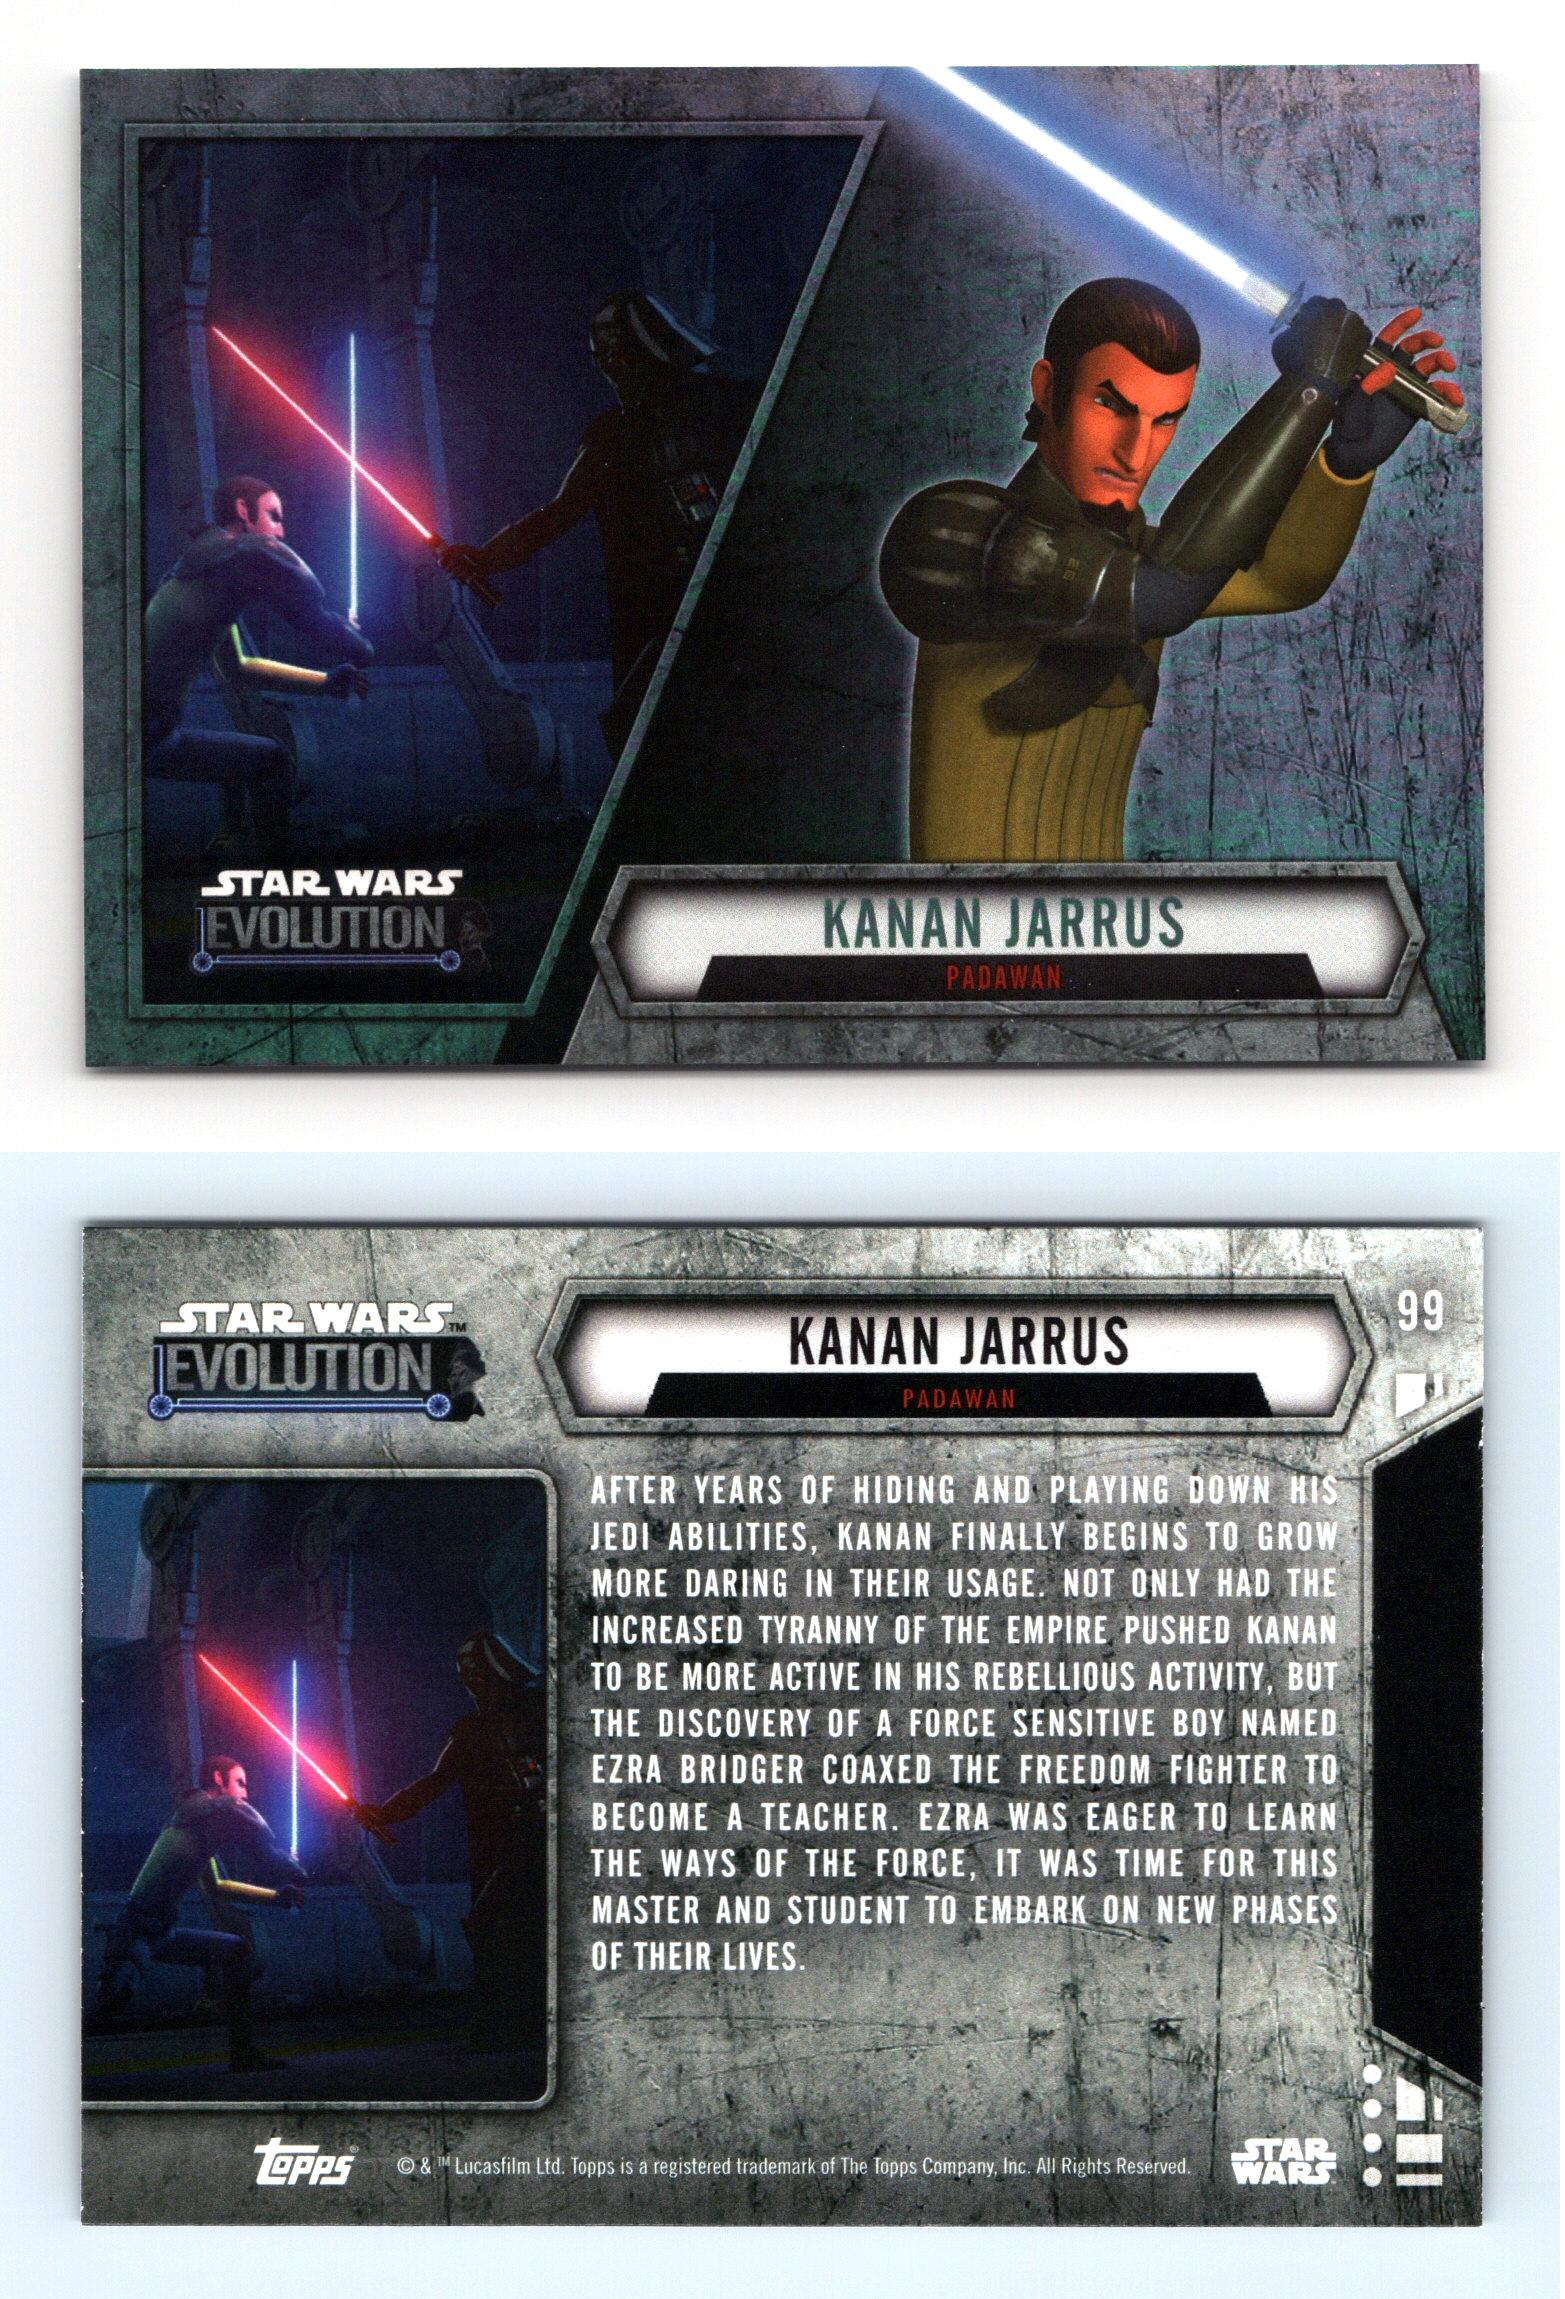 Kanan Jarrus (C) Card - Star Wars Trading Card Game